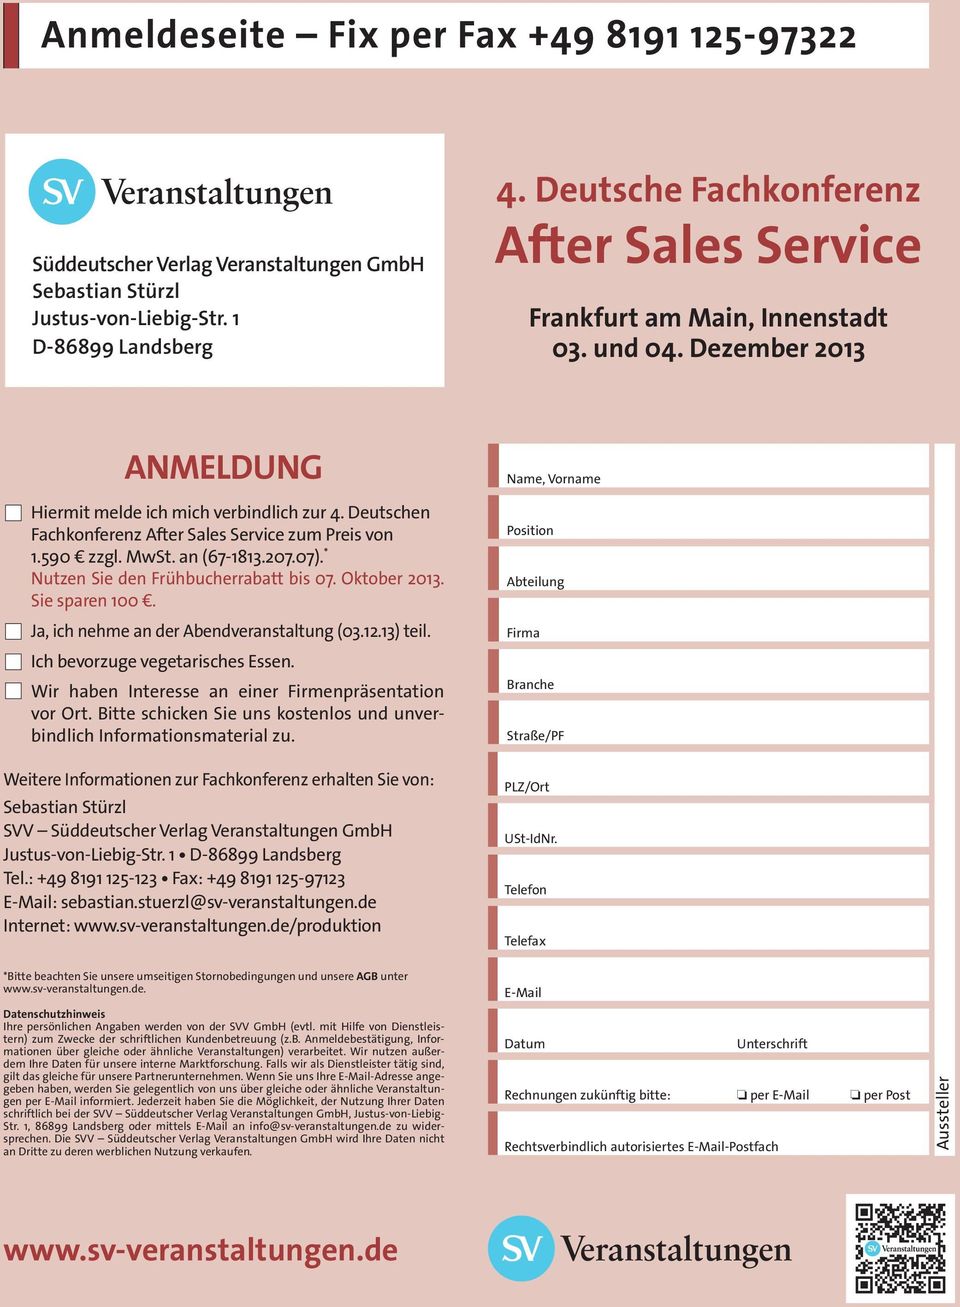 Deutschen Fachkonferenz After Sales Service zum Preis von 1.590 zzgl. MwSt. an (67-1813.207.07). * Nutzen Sie den Frühbucherrabatt bis 07. Oktober 2013. Sie sparen 100.